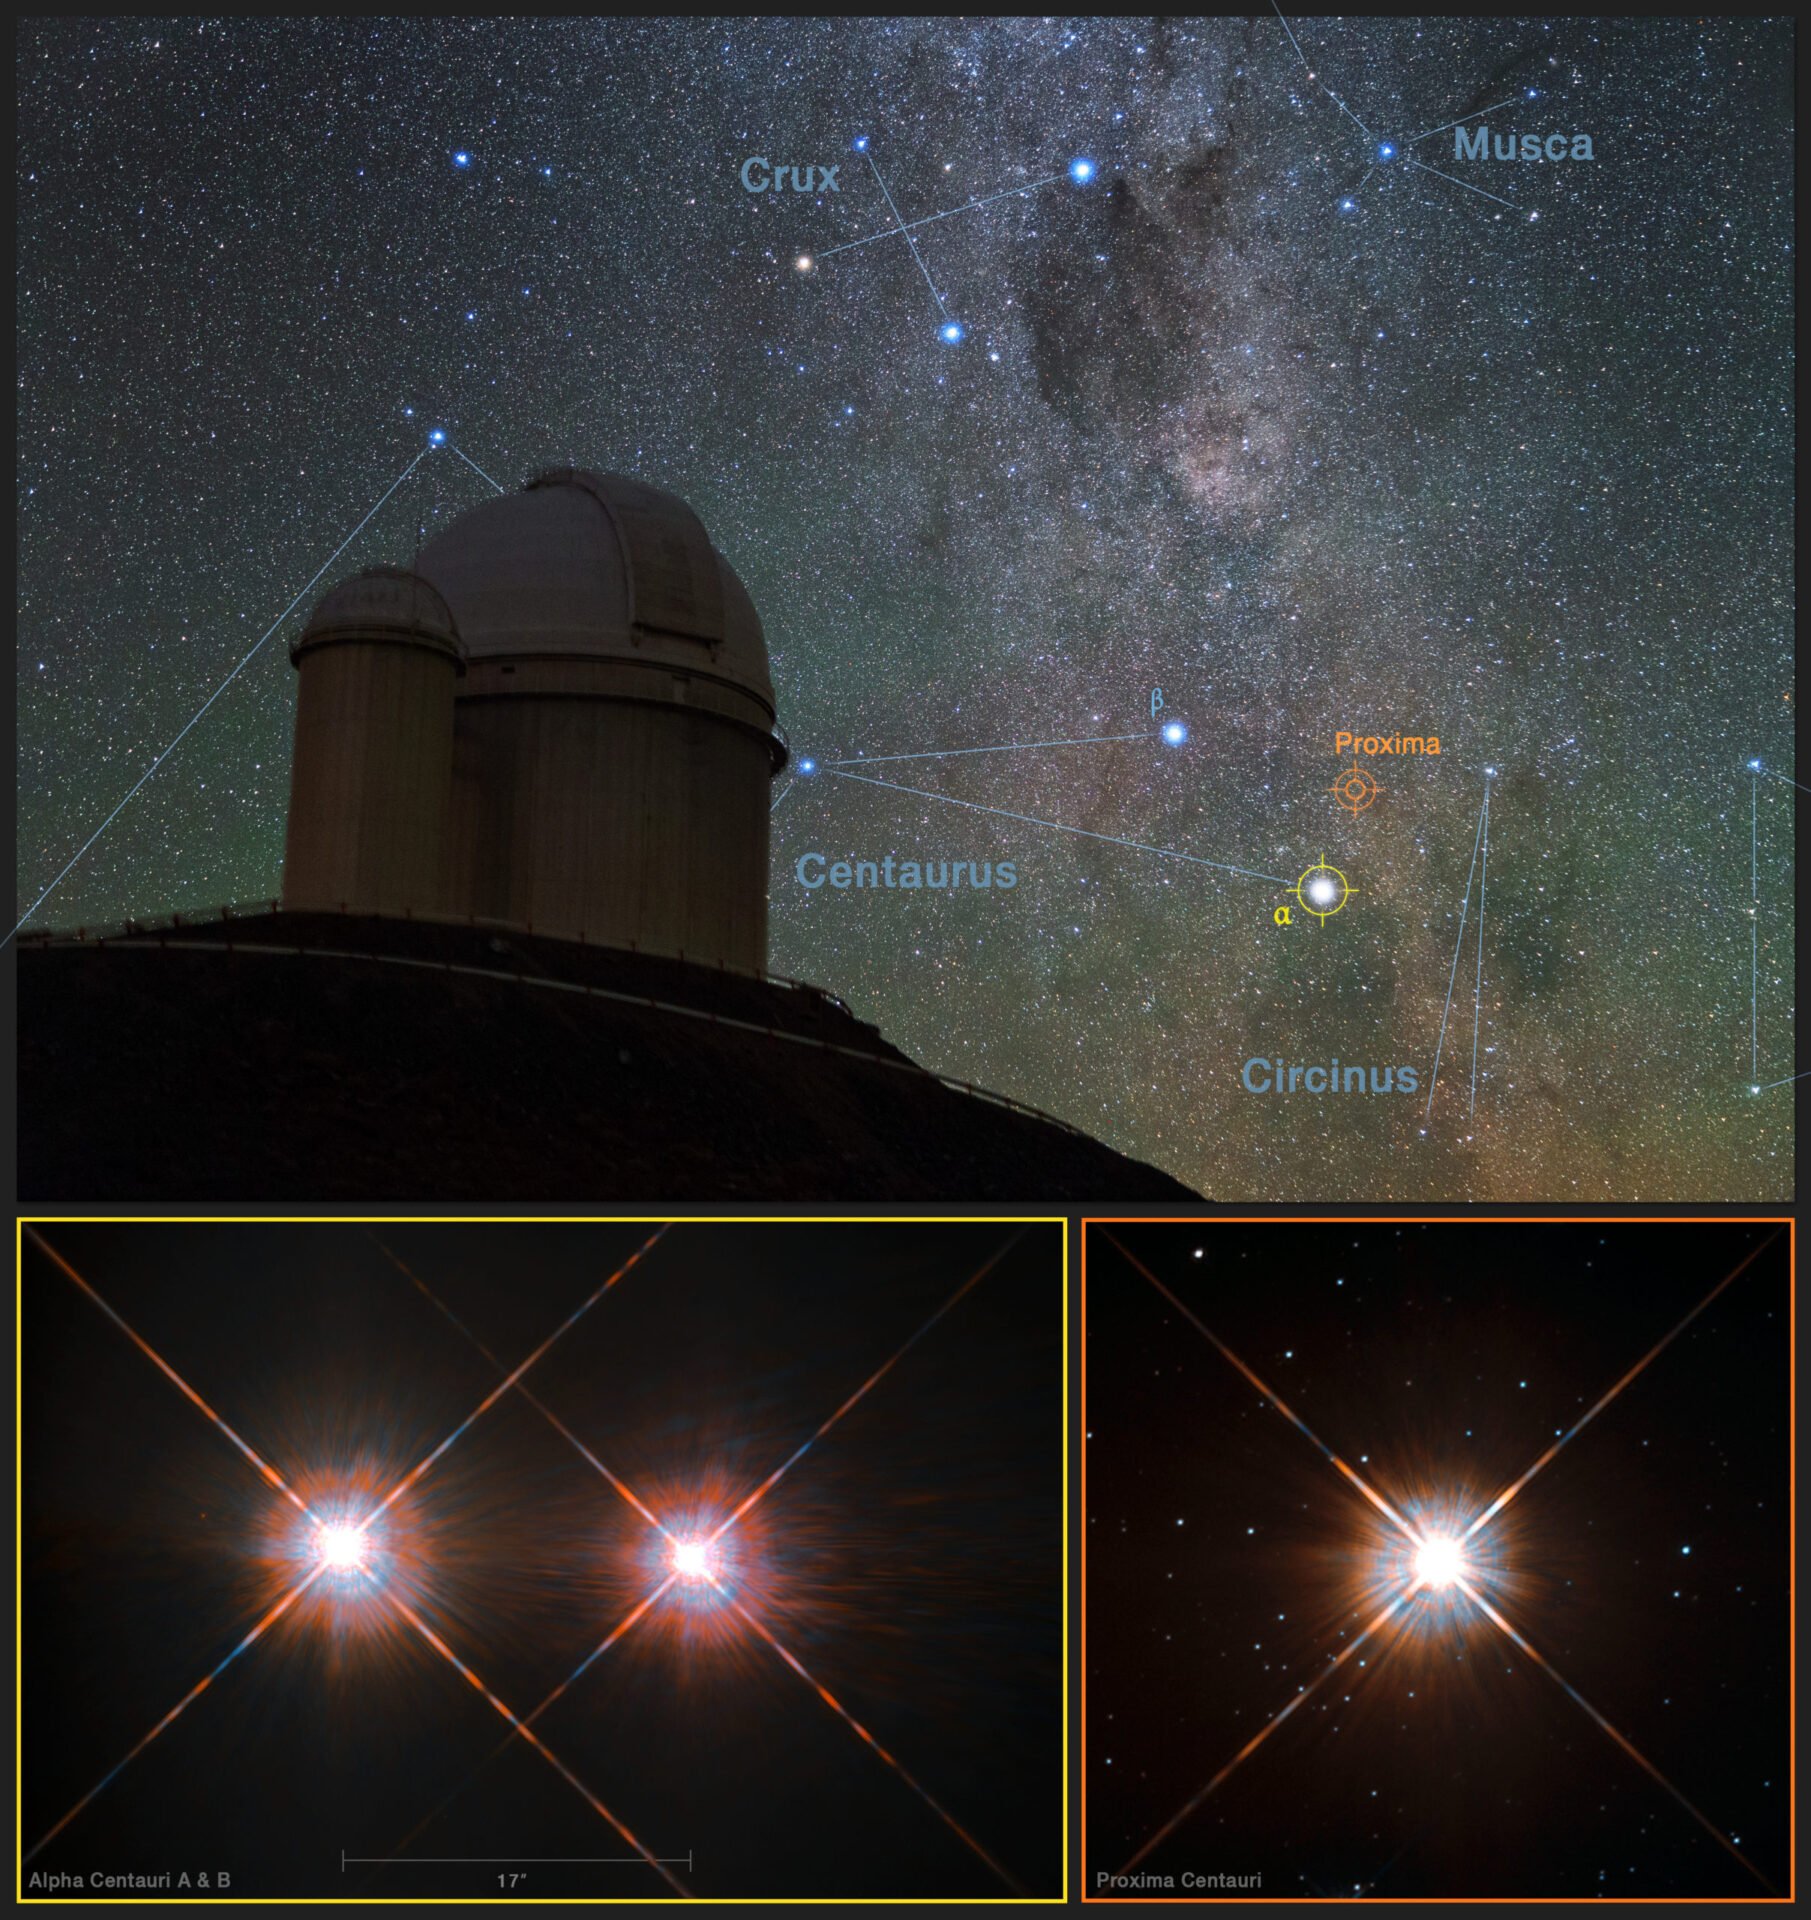 <p>Esta imagen combina una visión de los cielos del sur sobre el Telescopio de 3,6 metros de ESO, en el Observatorio La Silla (Chile), con imágenes de las estrellas Próxima Centauri (inferior derecha) y la estrella doble Alfa Centauri AB (abajo a la izquierda) tomadas con el telescopio espacial Hubble de NASA/ESA. Próxima Centauri es la estrella más cercana al Sistema Solar y tiene en órbita al planeta Próxima b, que fue descubierto usando el instrumento HARPS, instalado en el Telescopio de 3,6 metros de ESO. Crédito: Y. Beletsky (LCO)/ESO/ESA/NASA/M. Zamani</p>
